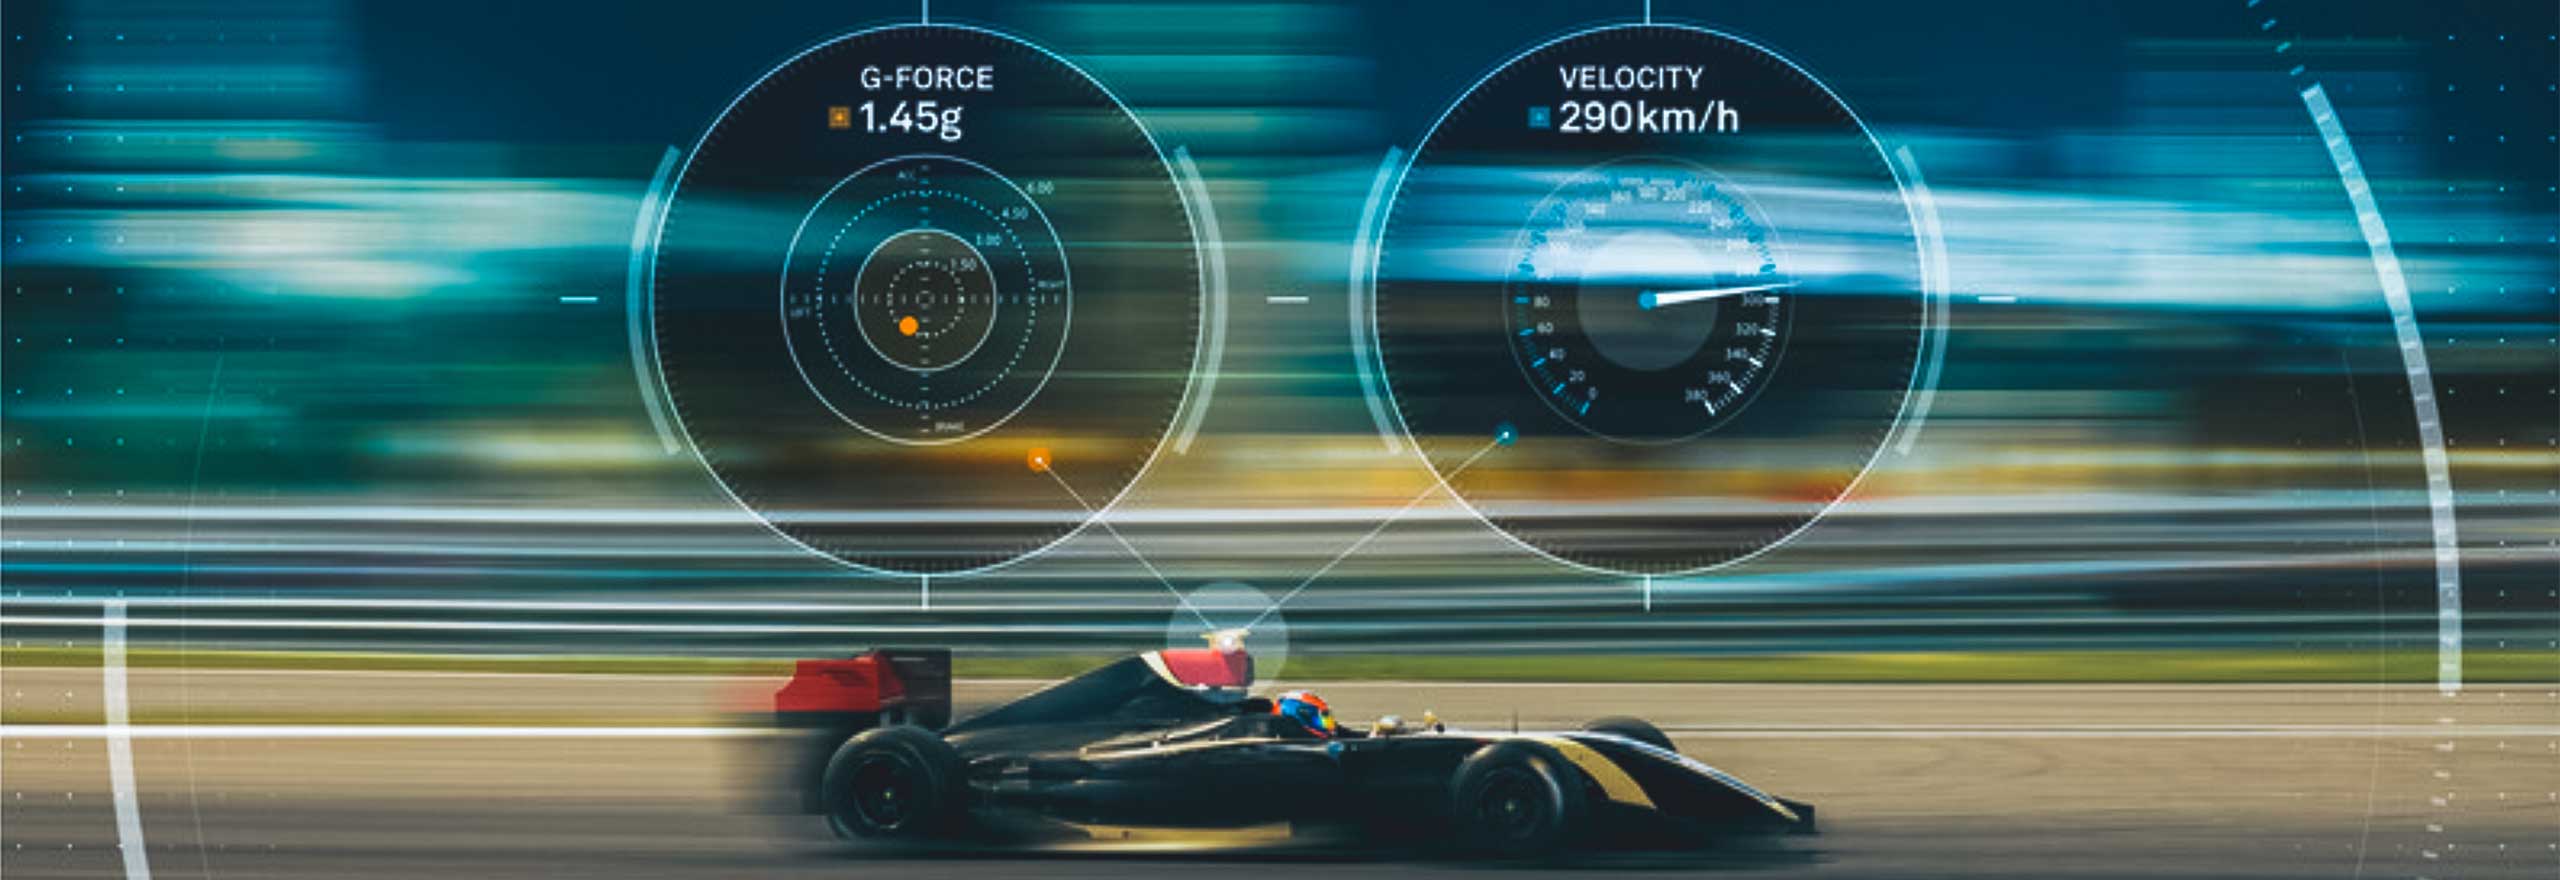 デジタル速度と Gフォース測定を装備したレーシングカー